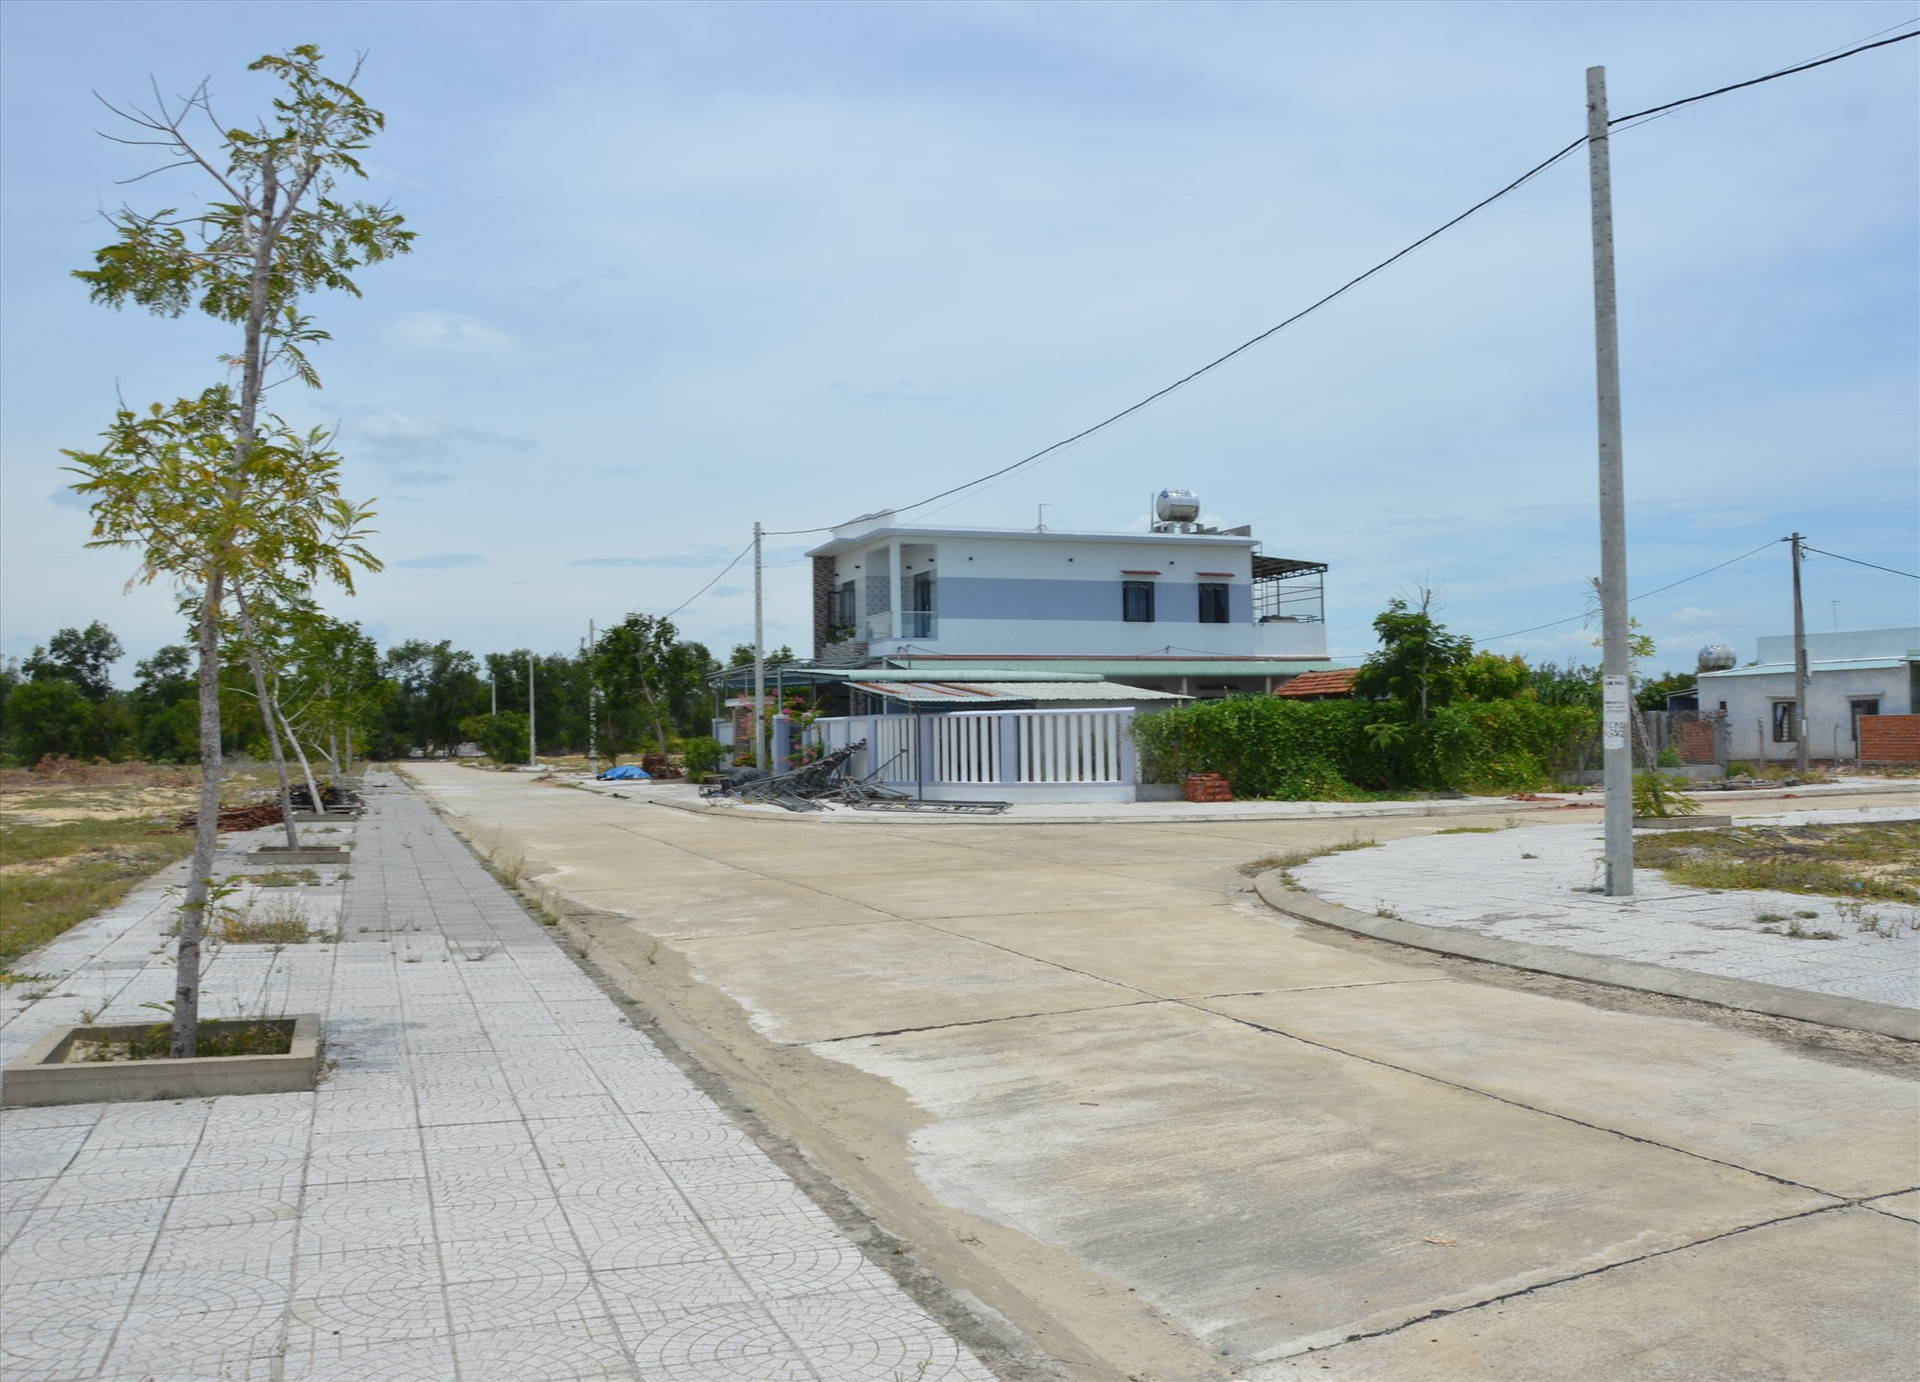 Nhà cửa tại khu tái định cư trung tâm xã Bình Dương (Thăng Bình) vẫn còn thưa thớt, trong khi người dân trong khu vực dự án đang “tiến thoái lưỡng nan”. Ảnh: H.PHÚC